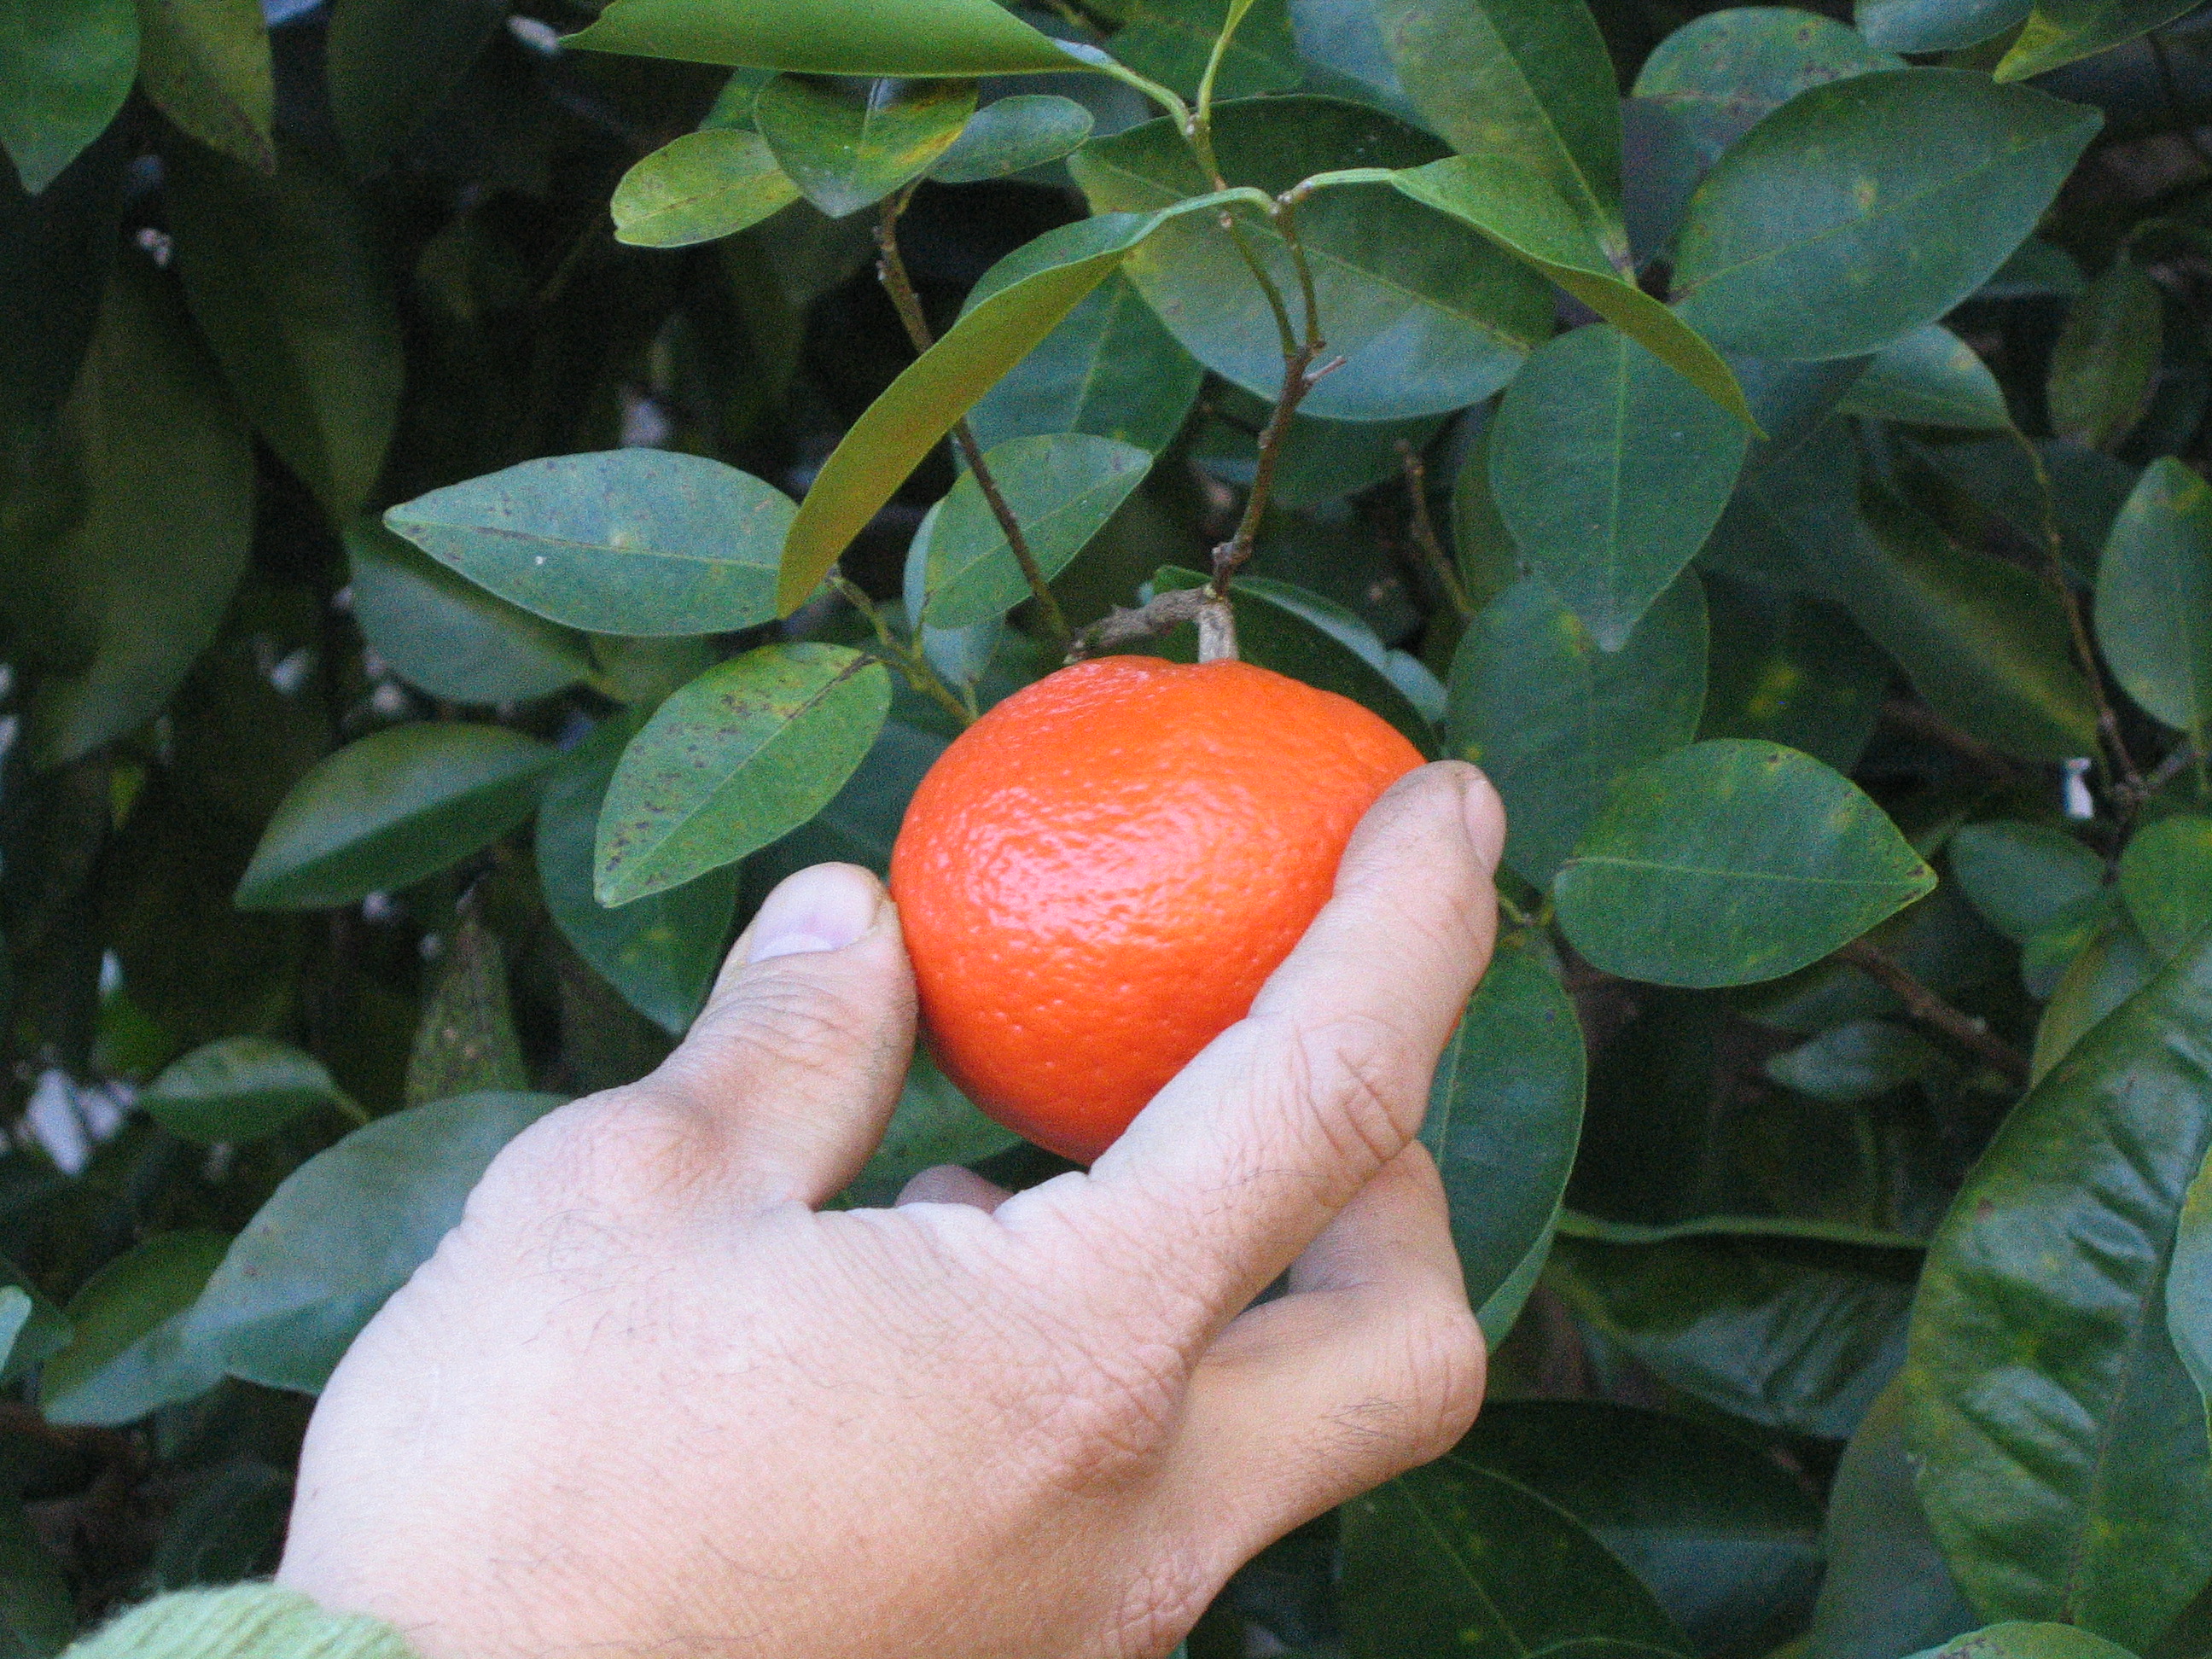 Picking tangerines